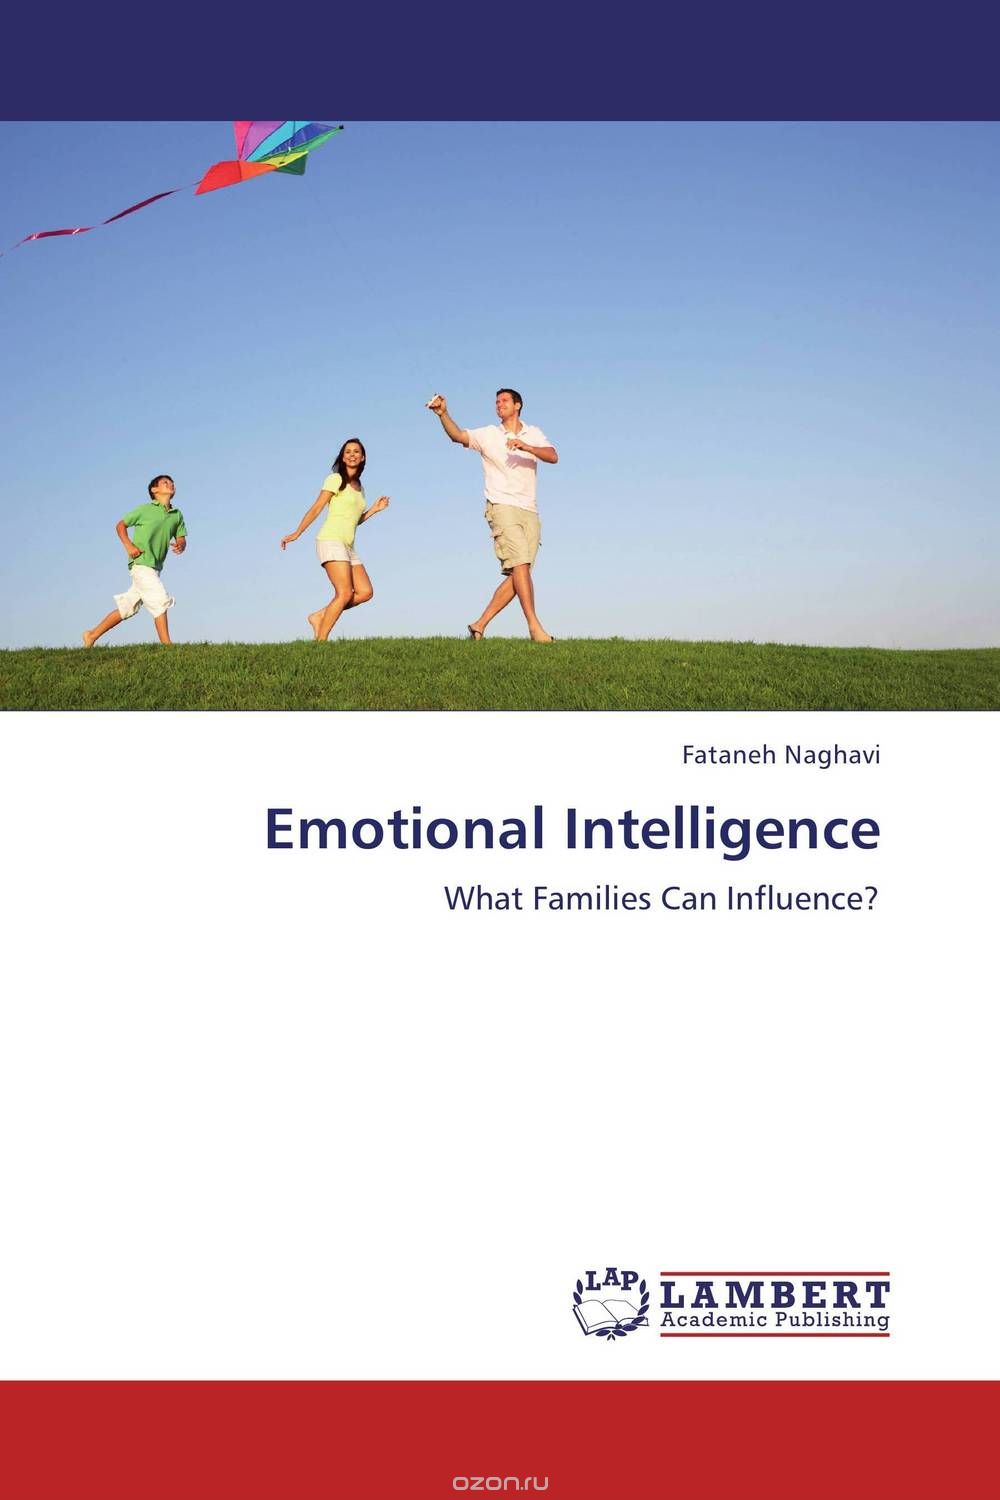 Скачать книгу "Emotional Intelligence"